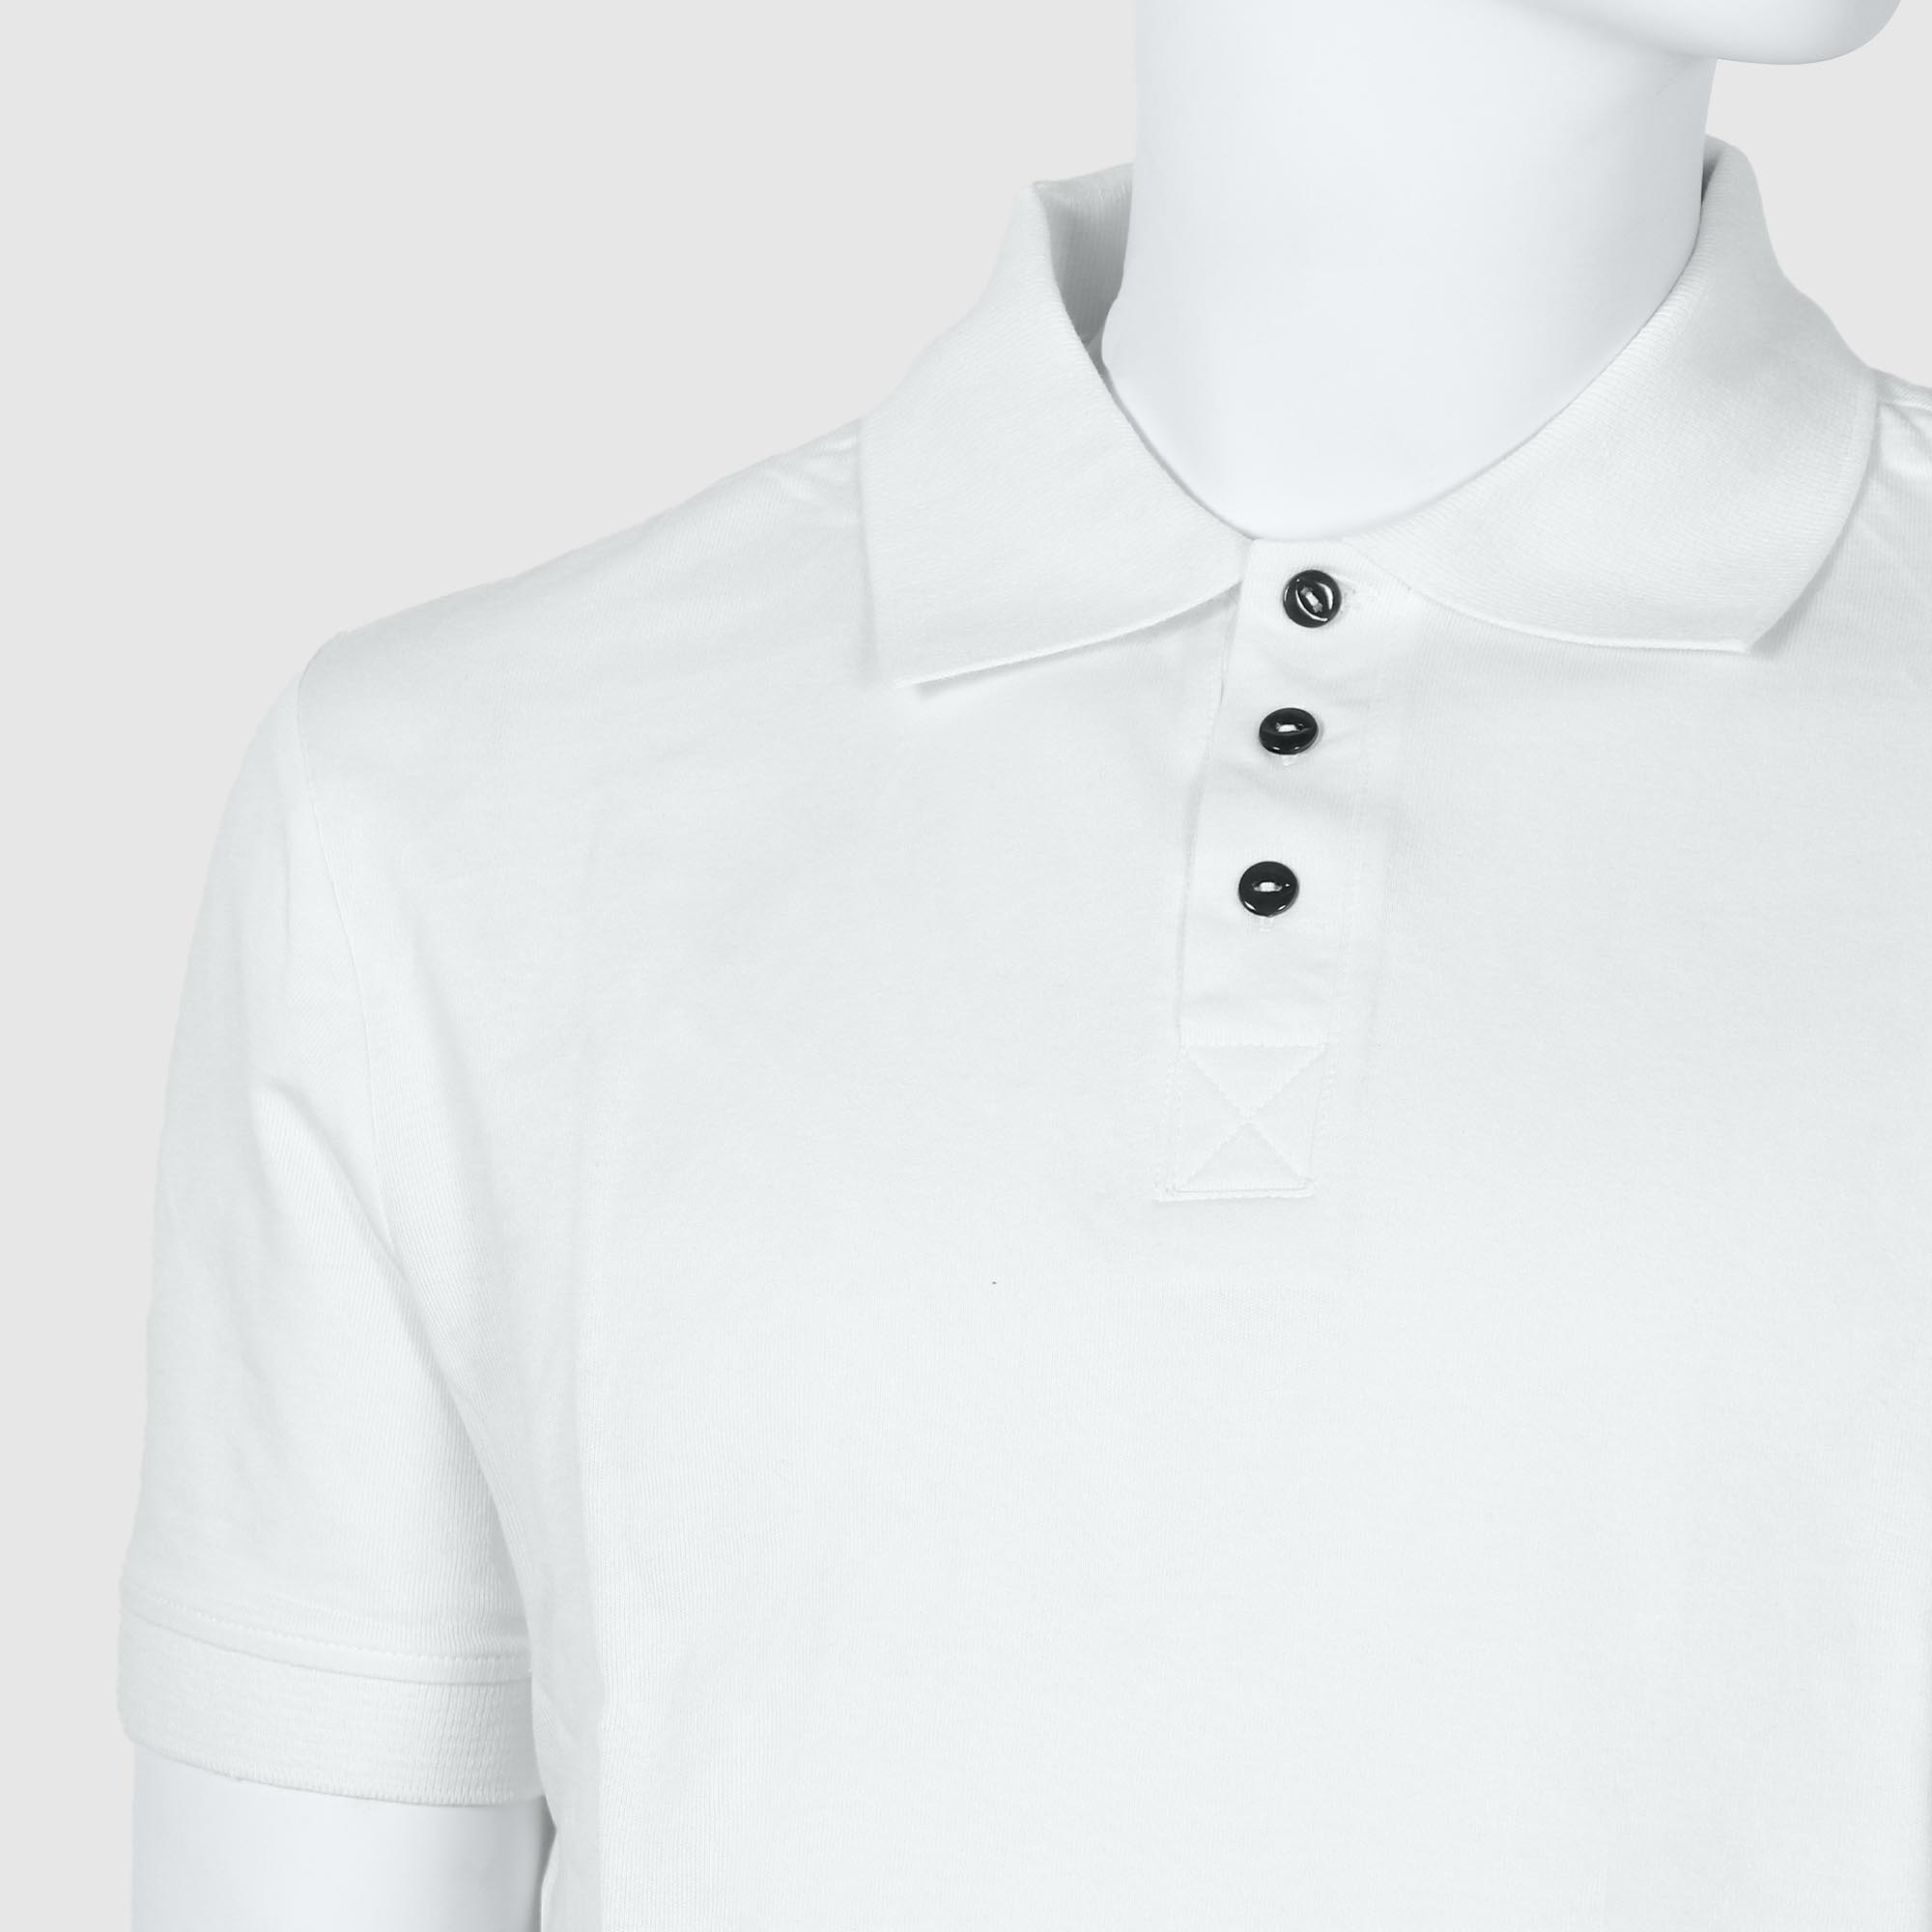 Мужская футболка-поло Diva Teks белая (DTD-07), цвет белый, размер 52-54 - фото 3